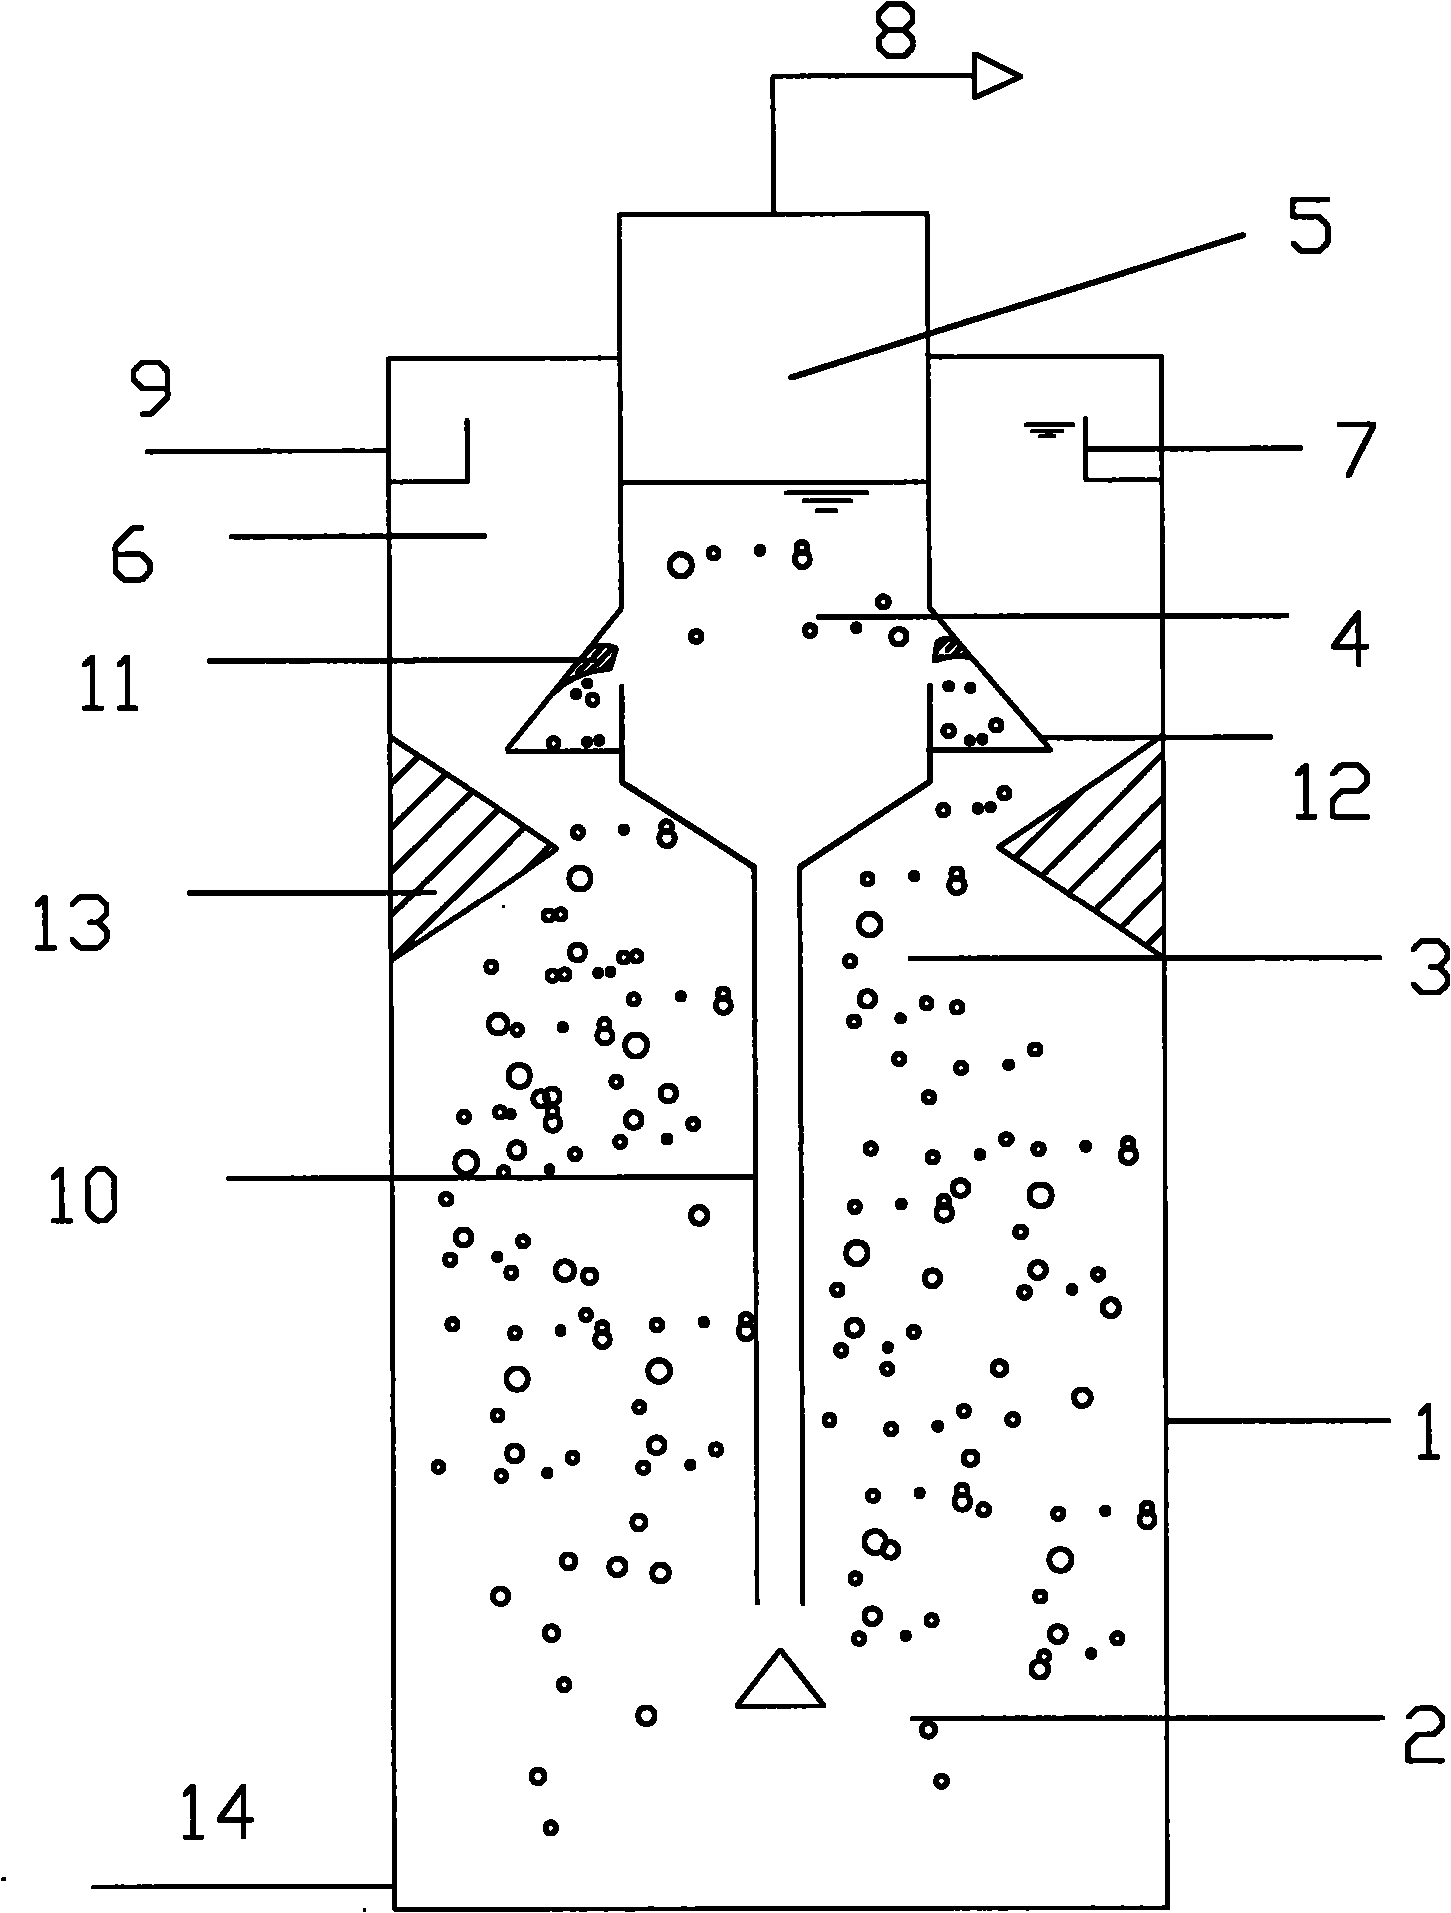 Internal circulation upflow anaerobic sludge blanket reactor